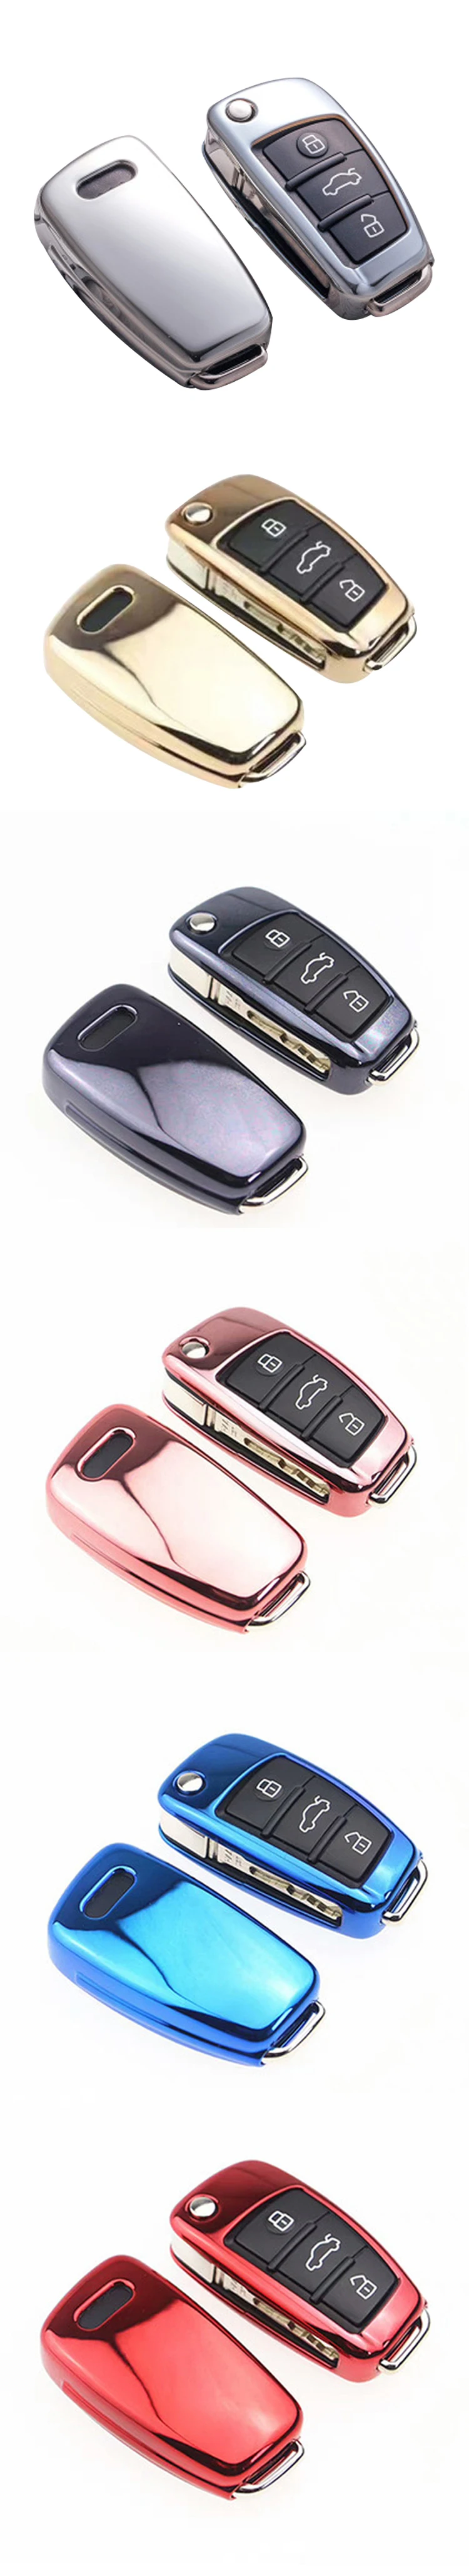 ТПУ Мягкий силиконовый чехол для ключей с ярким покрытием для Audi Q3 A4L A6L Q5 Q7 A1 A3 автомобильный чехол с откидной крышкой для ключей 6 цветов аксессуары